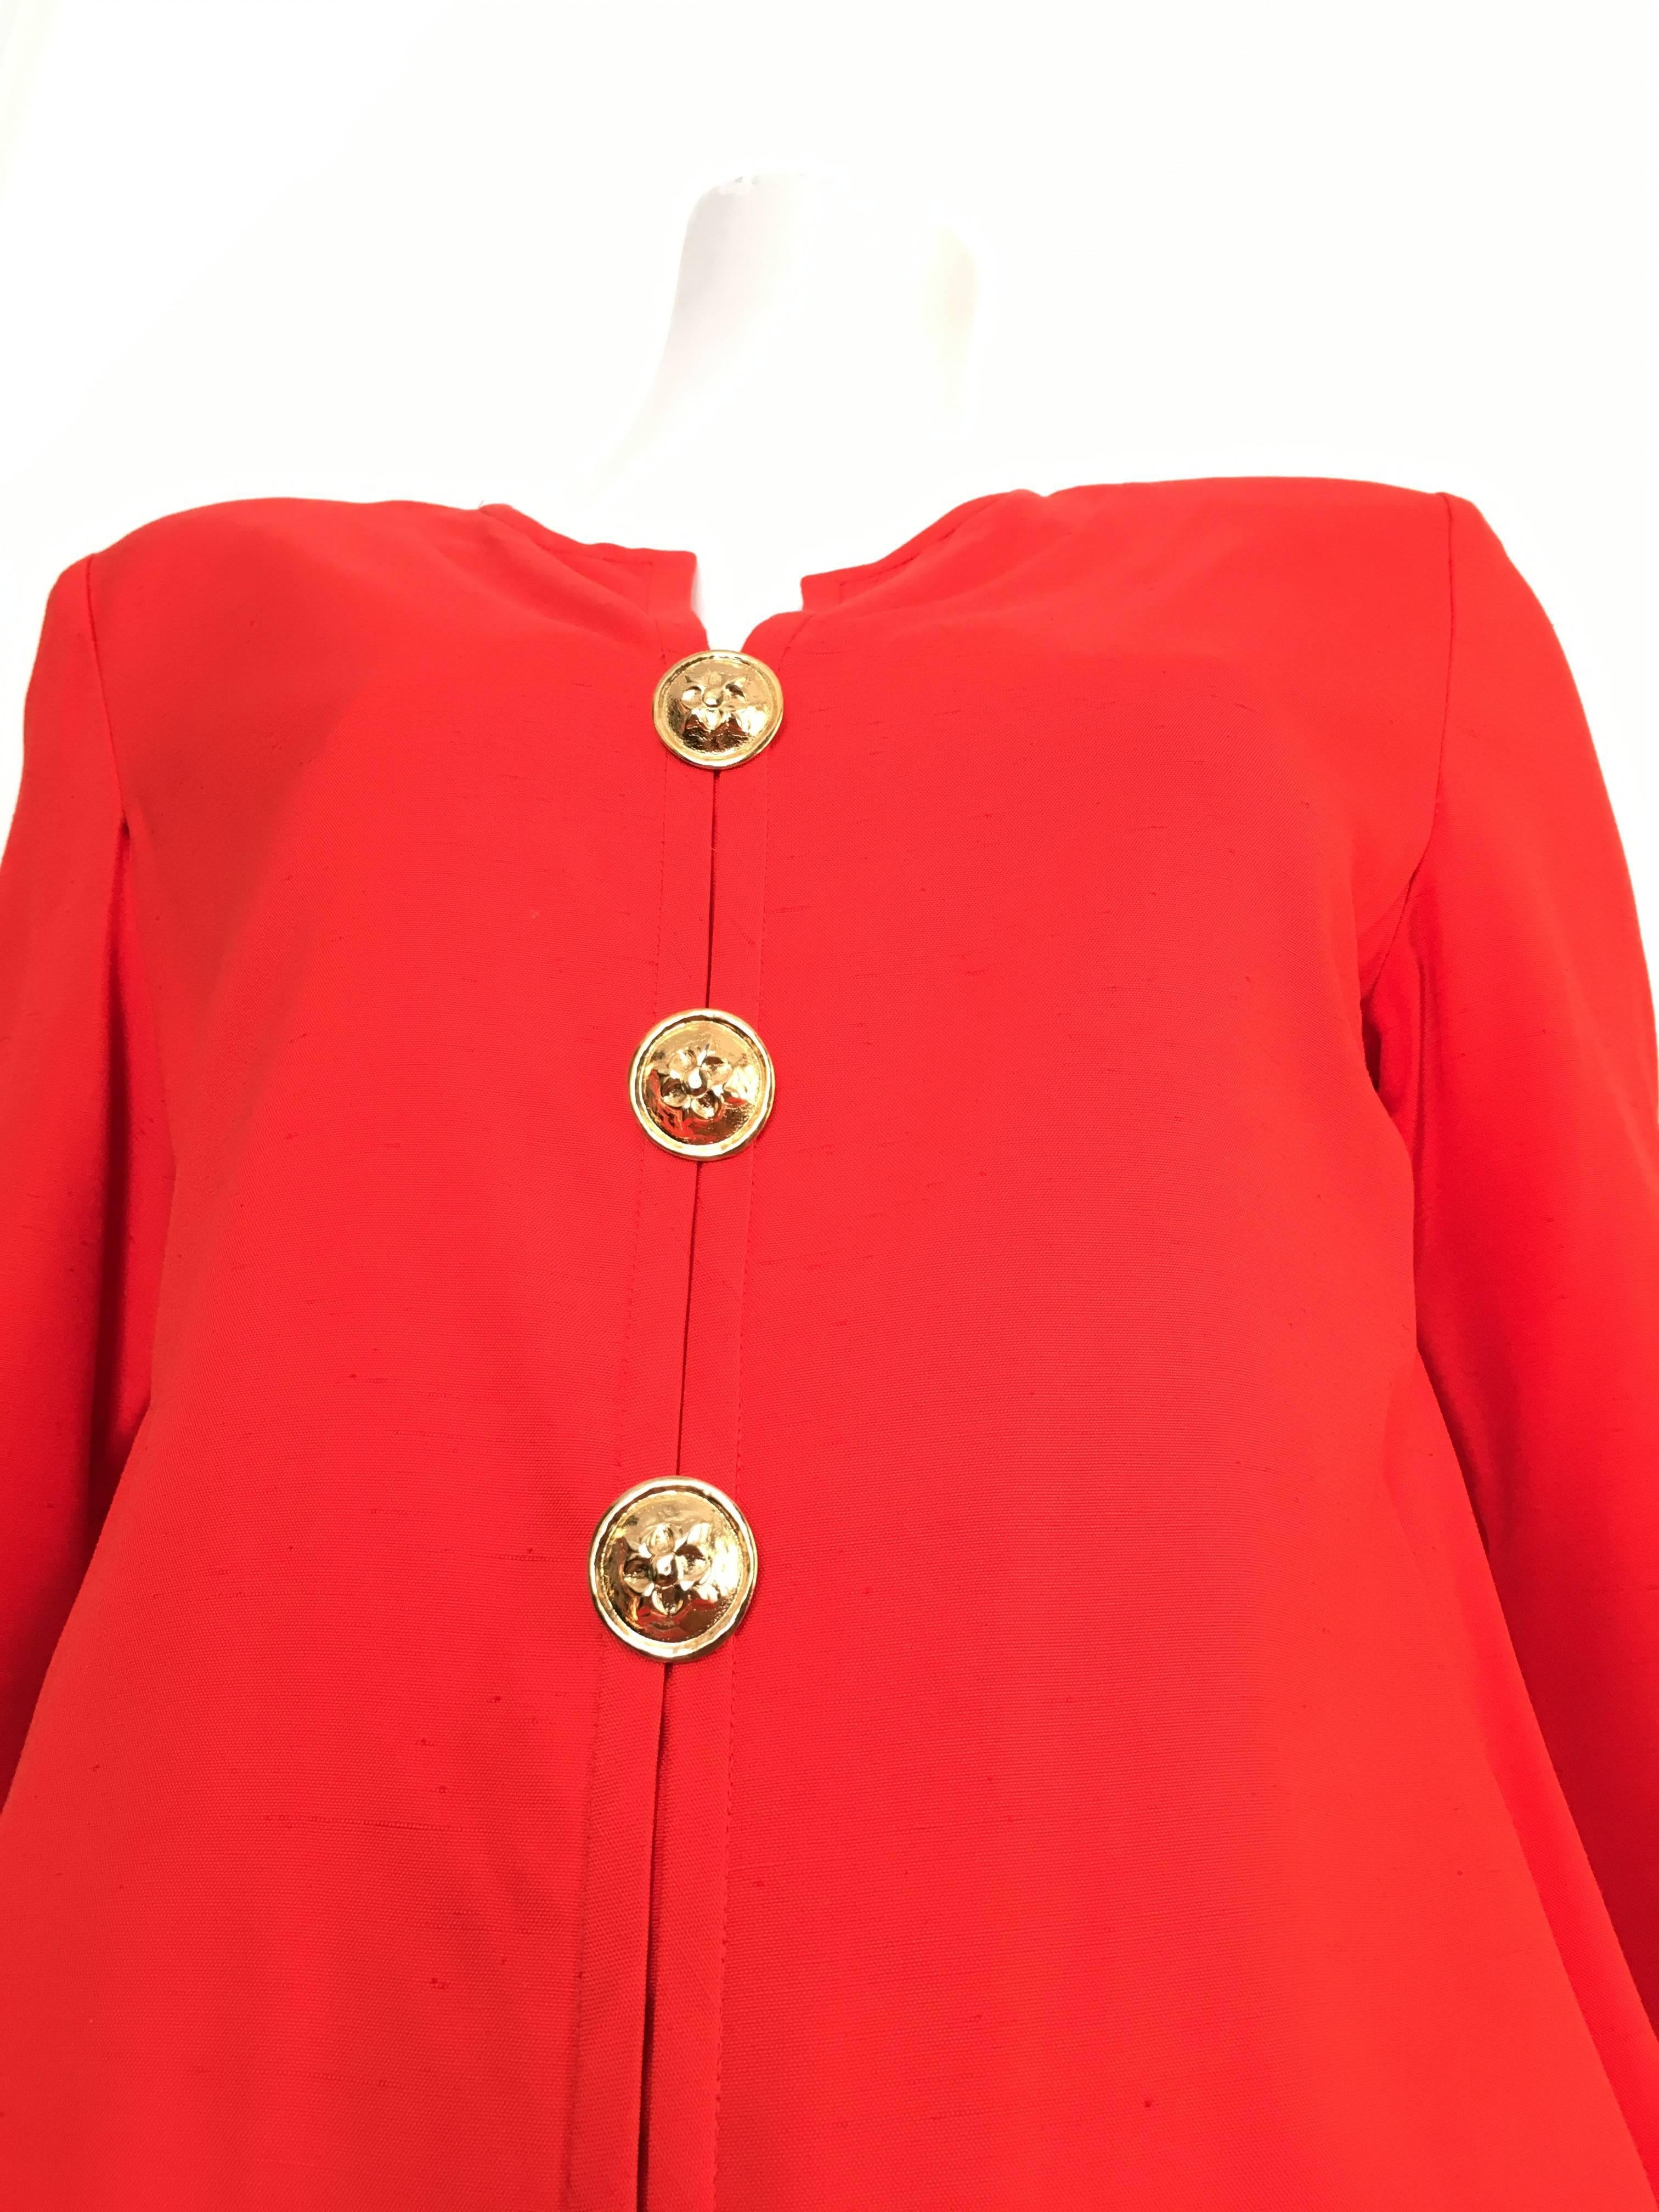 Red Carolina Herrera 1980s Silk Dress Size 10. For Sale